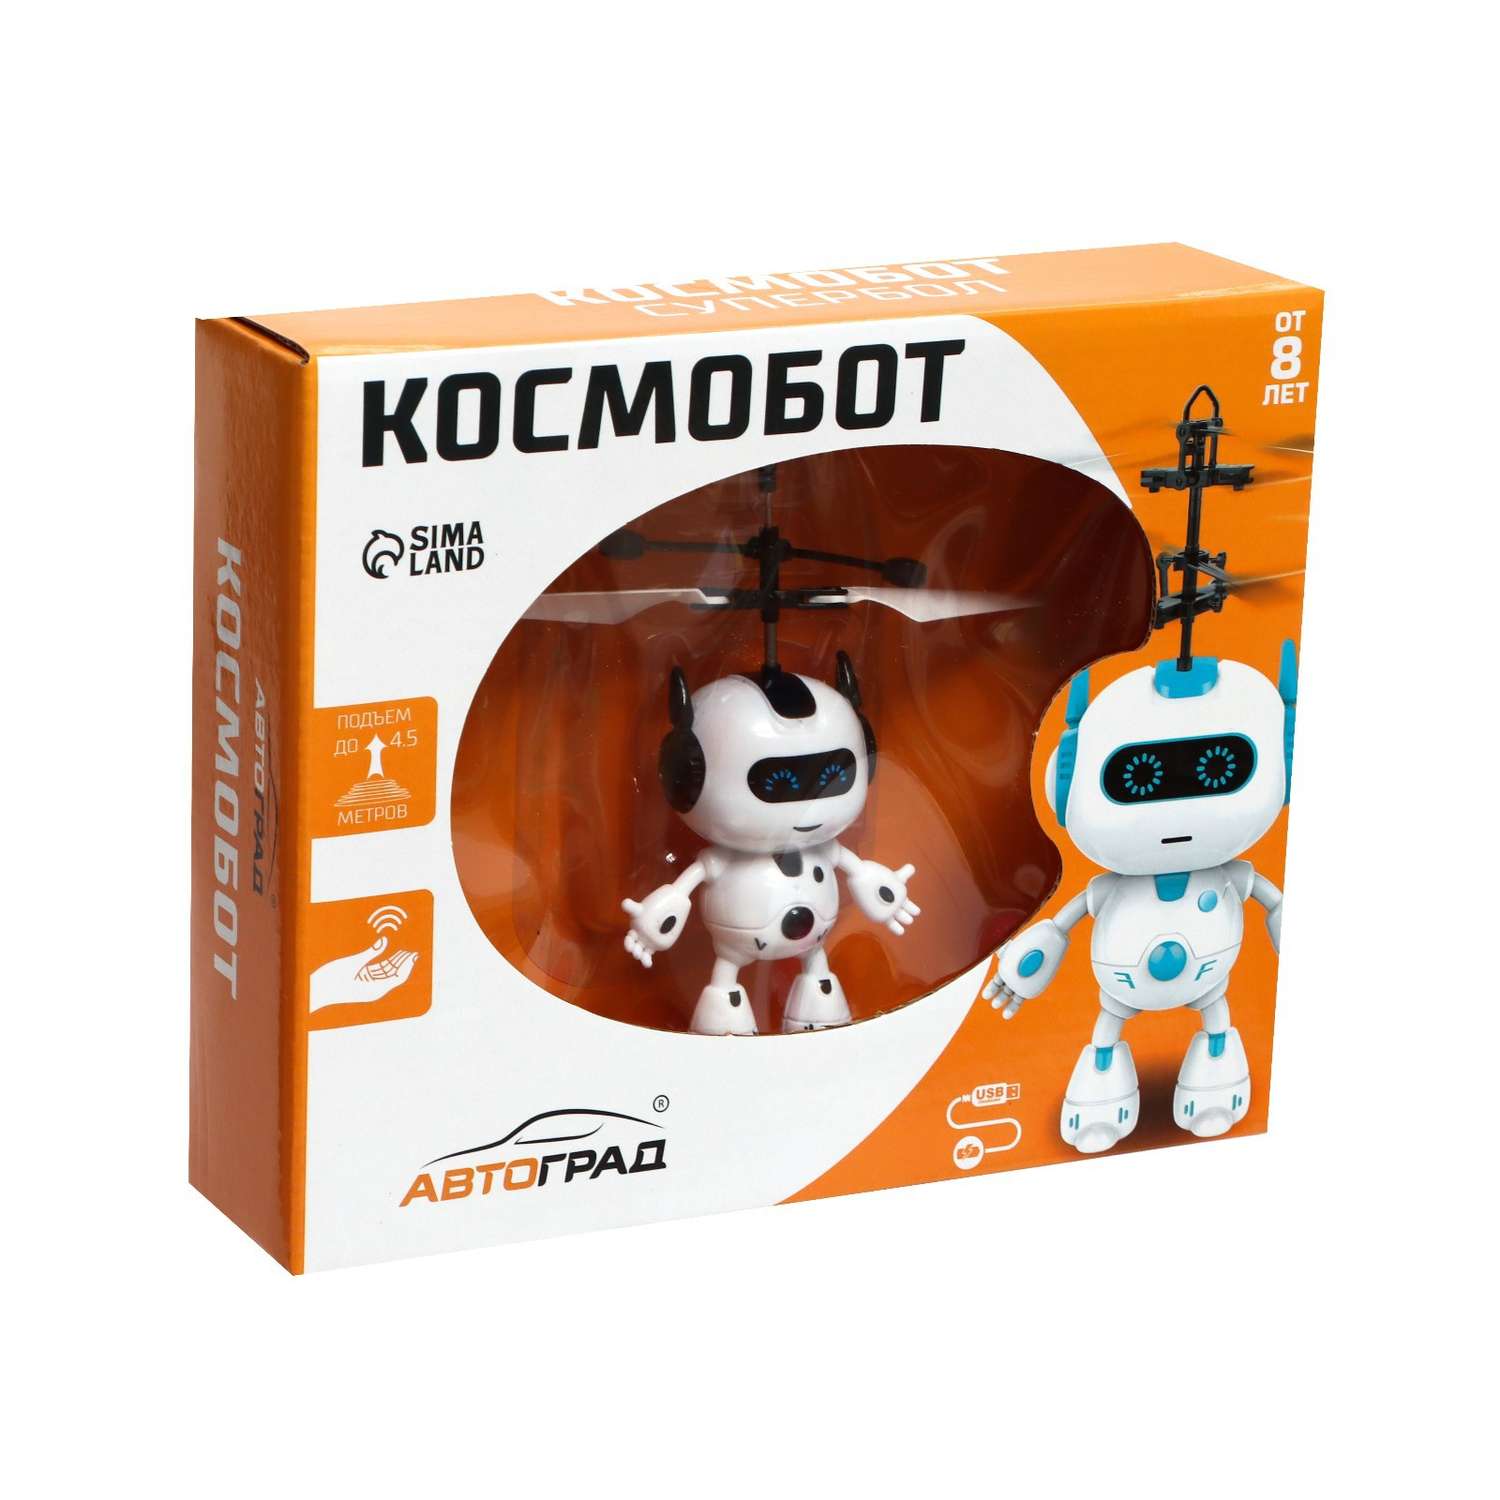 Летающая игрушка Автоград «Космобот» работает от аккумулятора цвет бело-чёрный - фото 4